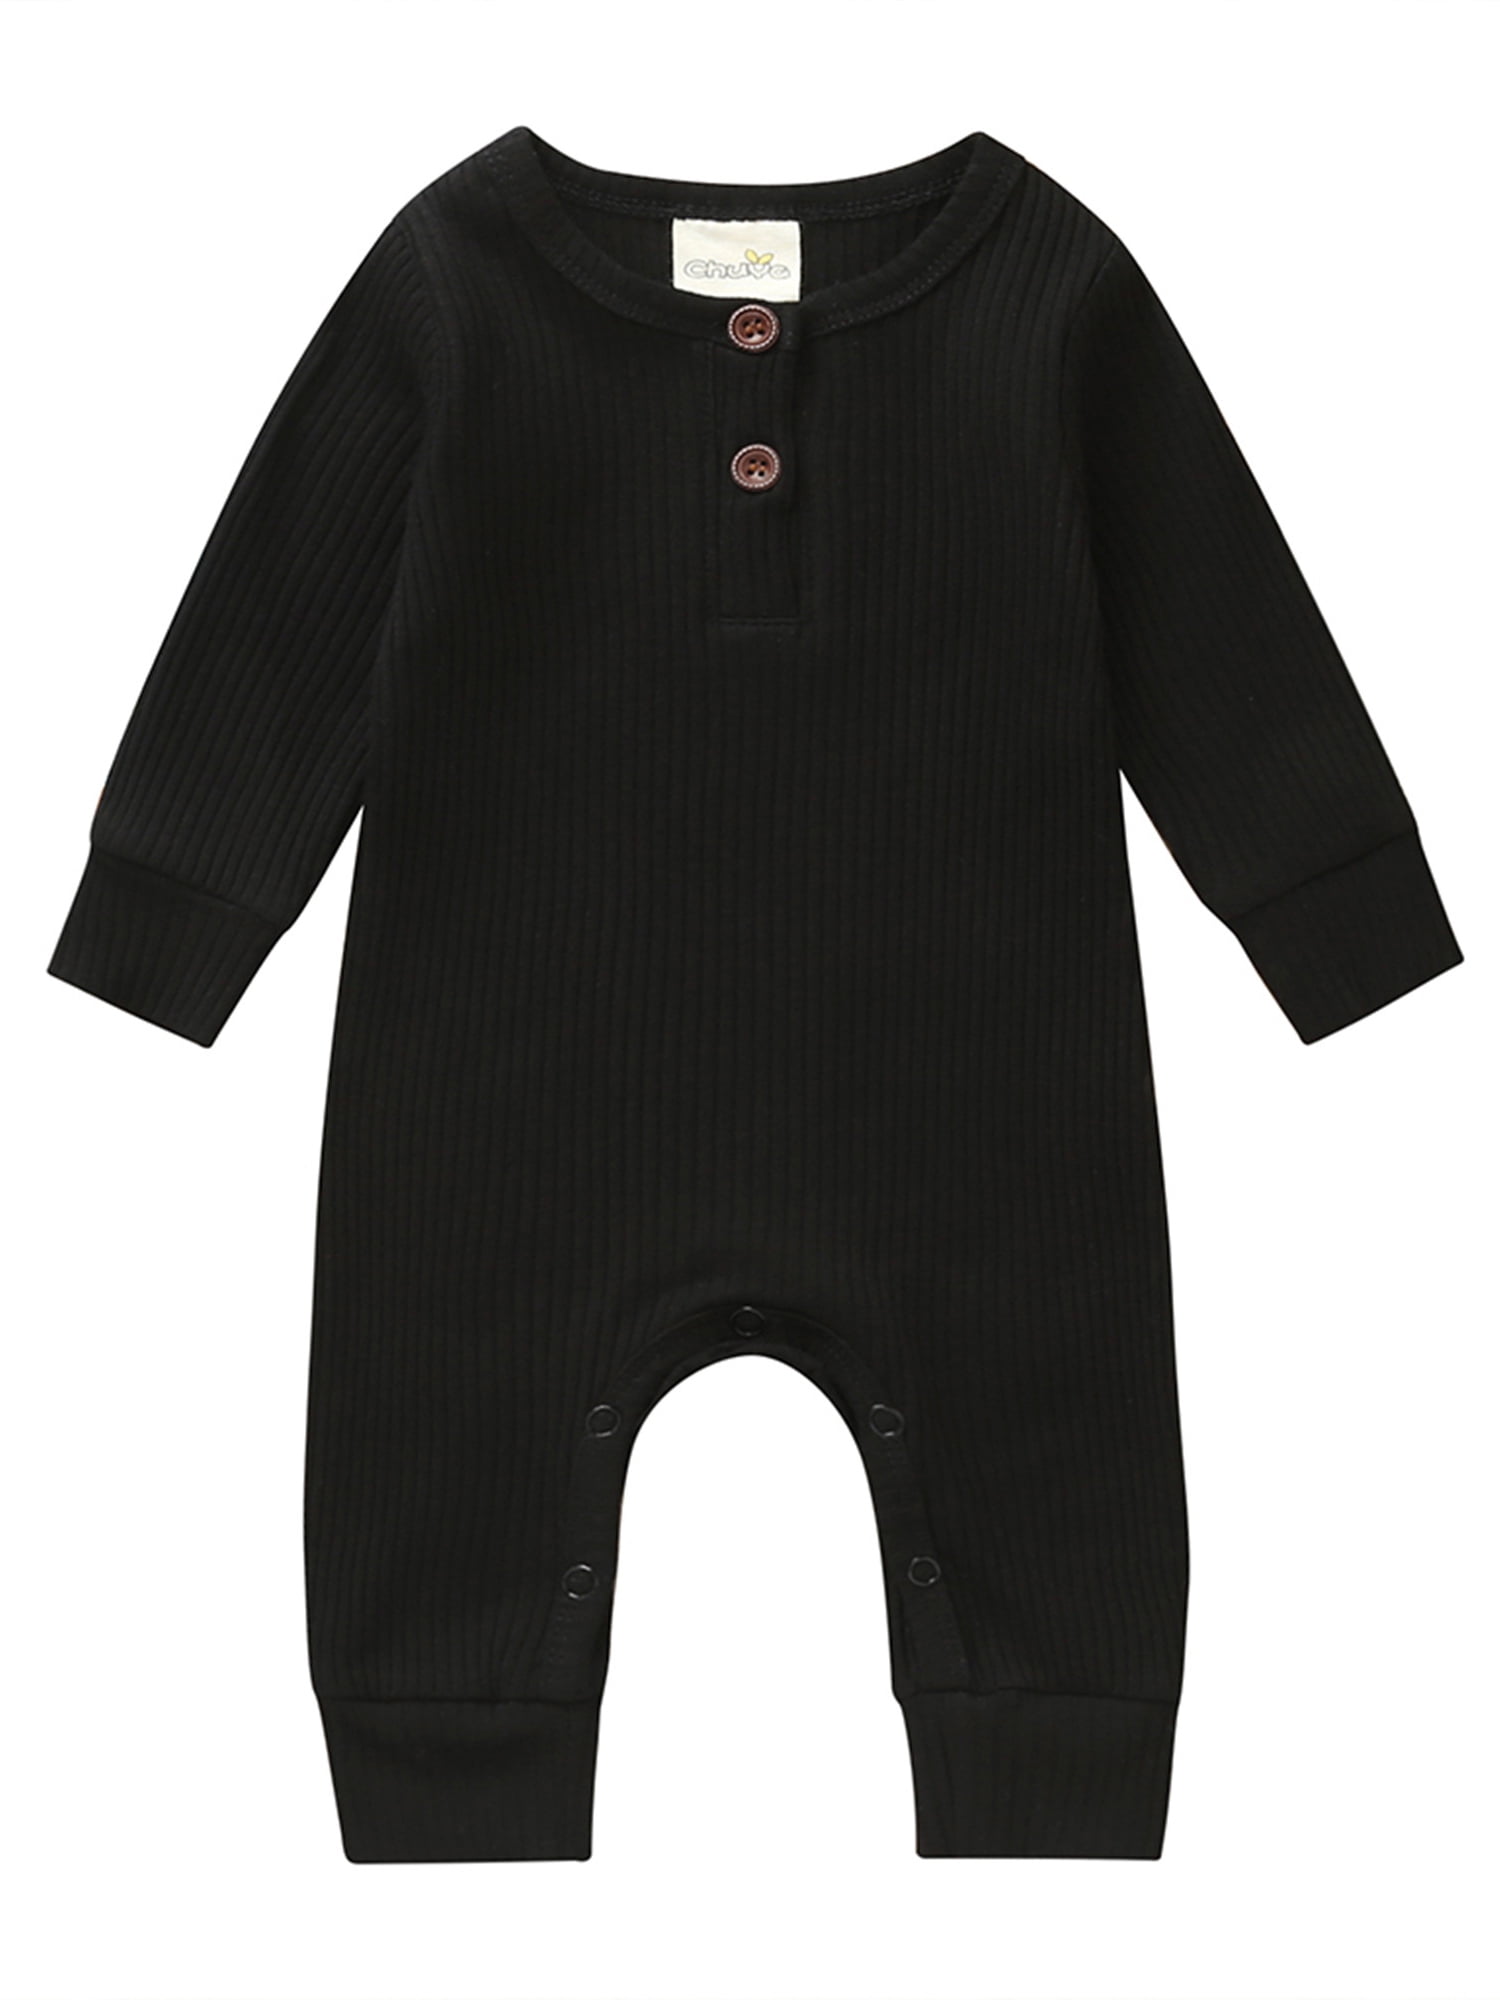 Newborn Infant Baby Boy Girl Plaid Romper Bodysuit Jumpsuit Clothes Outfits Lots 